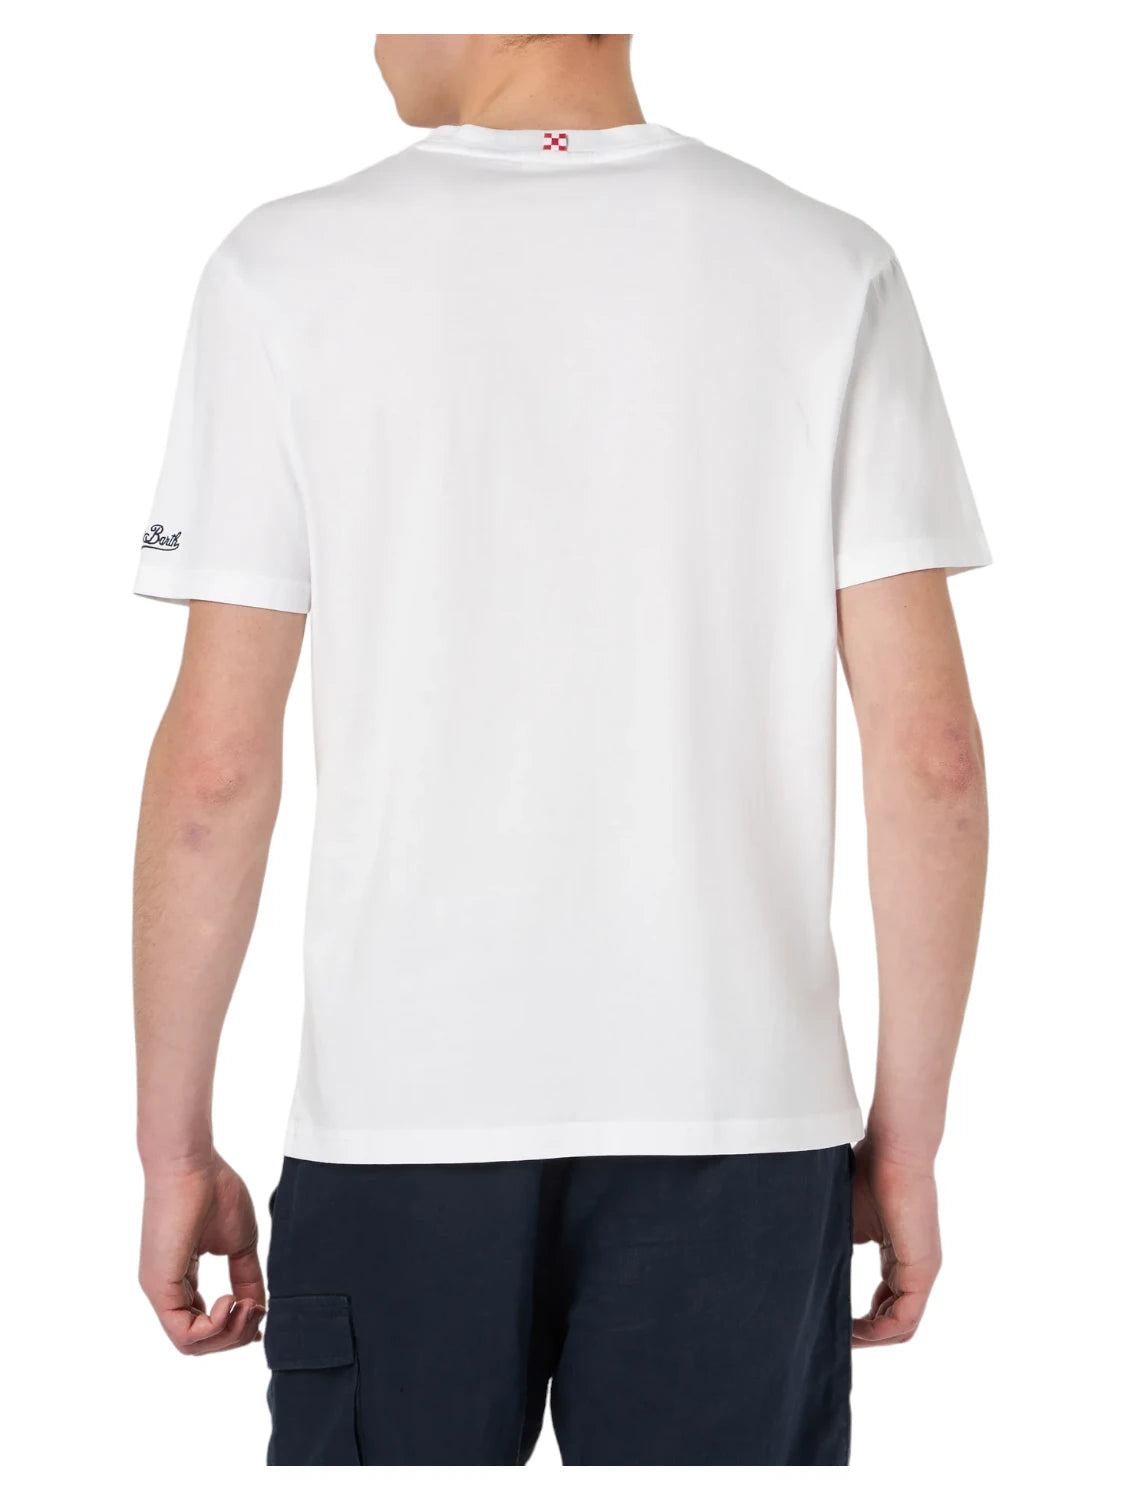 T-Shirt Uomo Cotone Edizione Speciale Vespa®: Forte dei Marmi Style-Mc2 Saint Barth-T-shirt-Vittorio Citro Boutique